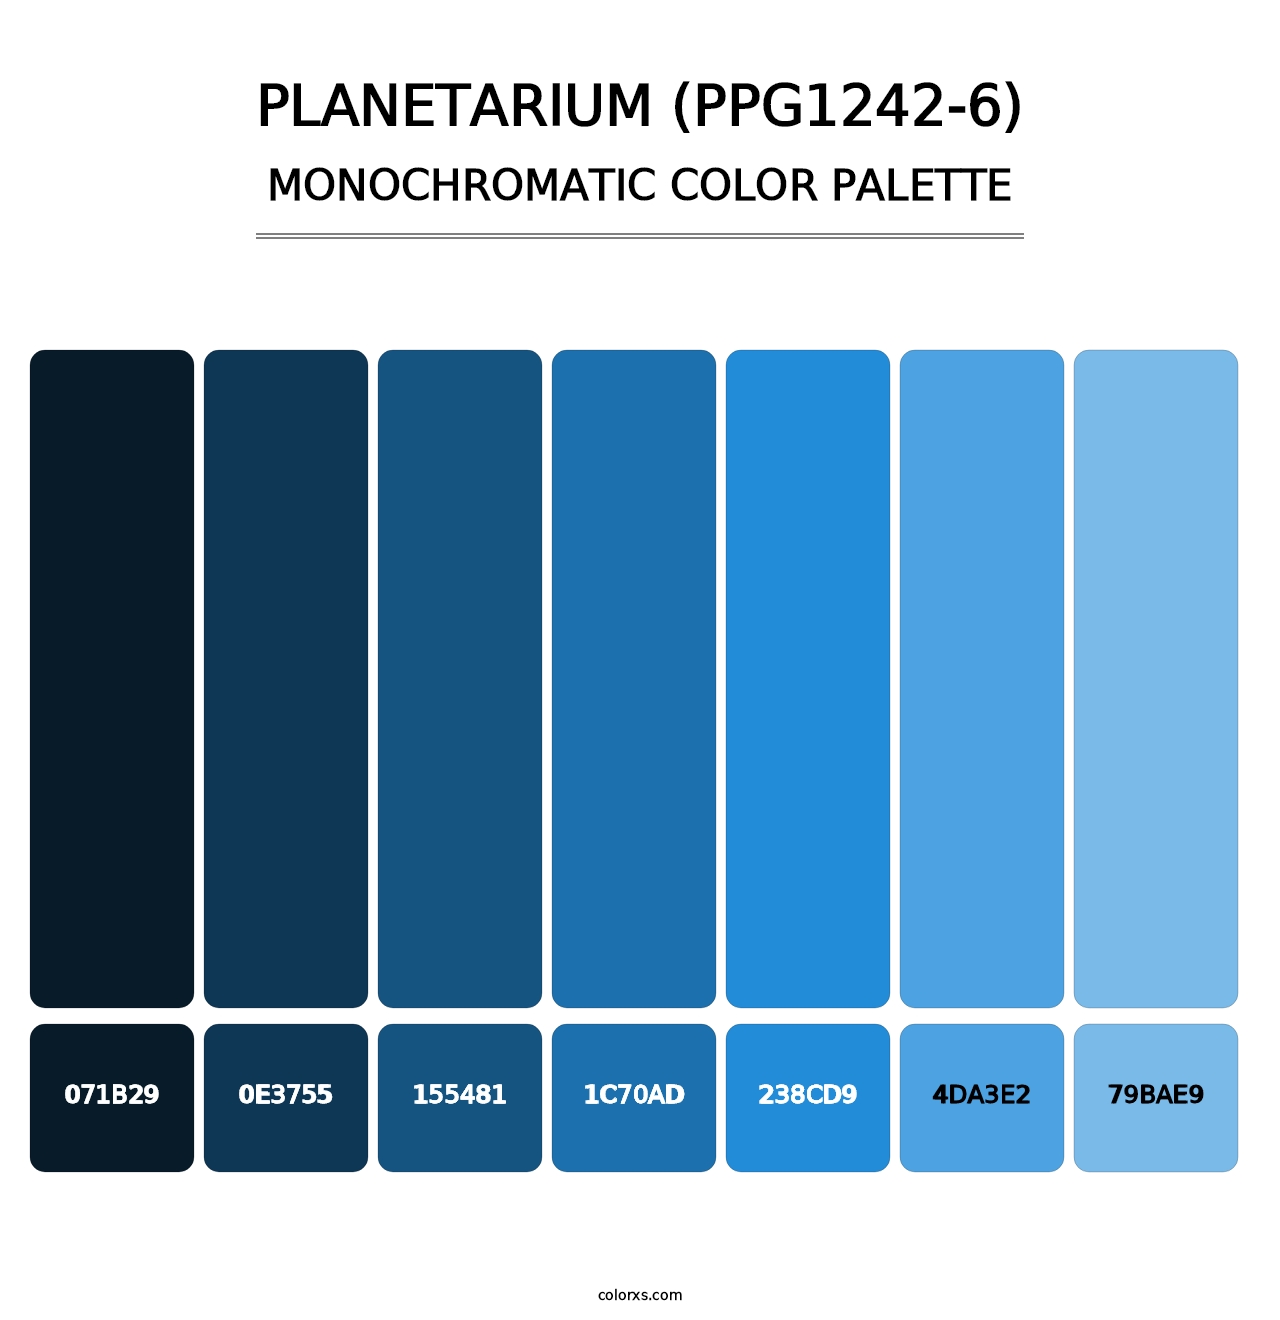 Planetarium (PPG1242-6) - Monochromatic Color Palette